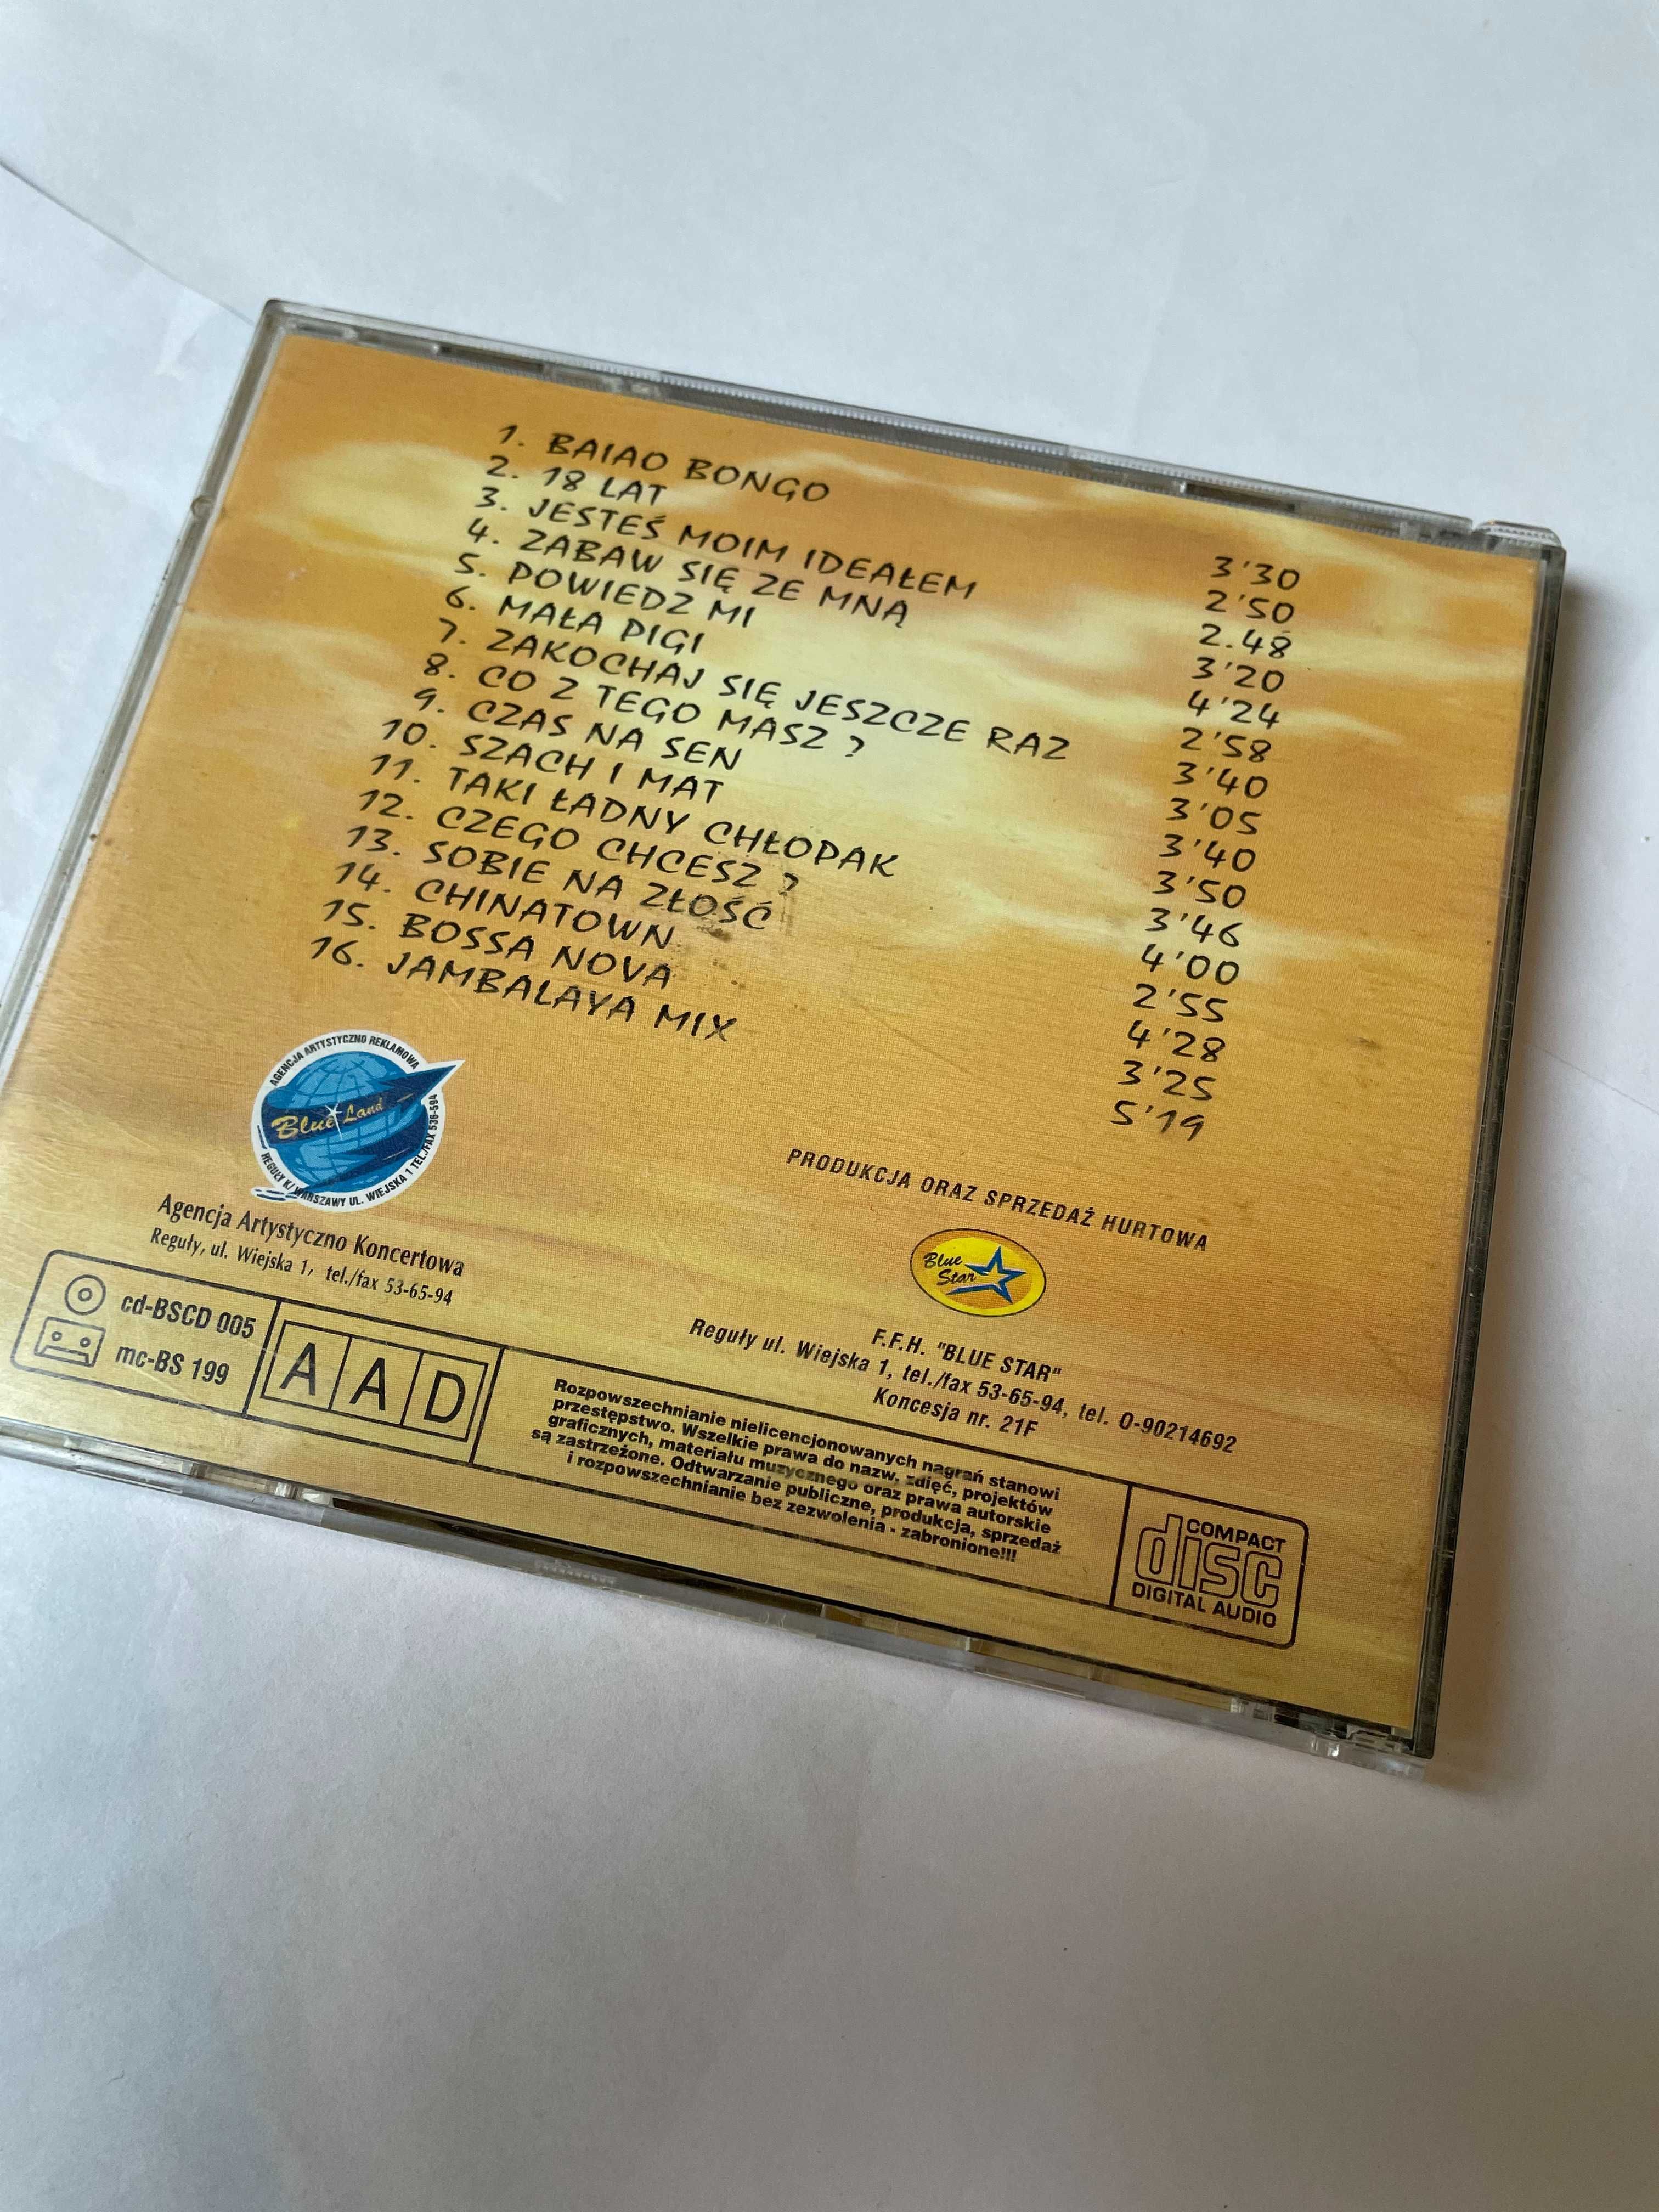 Shazza – The Best Of - 1 wydanie - unikat! CD